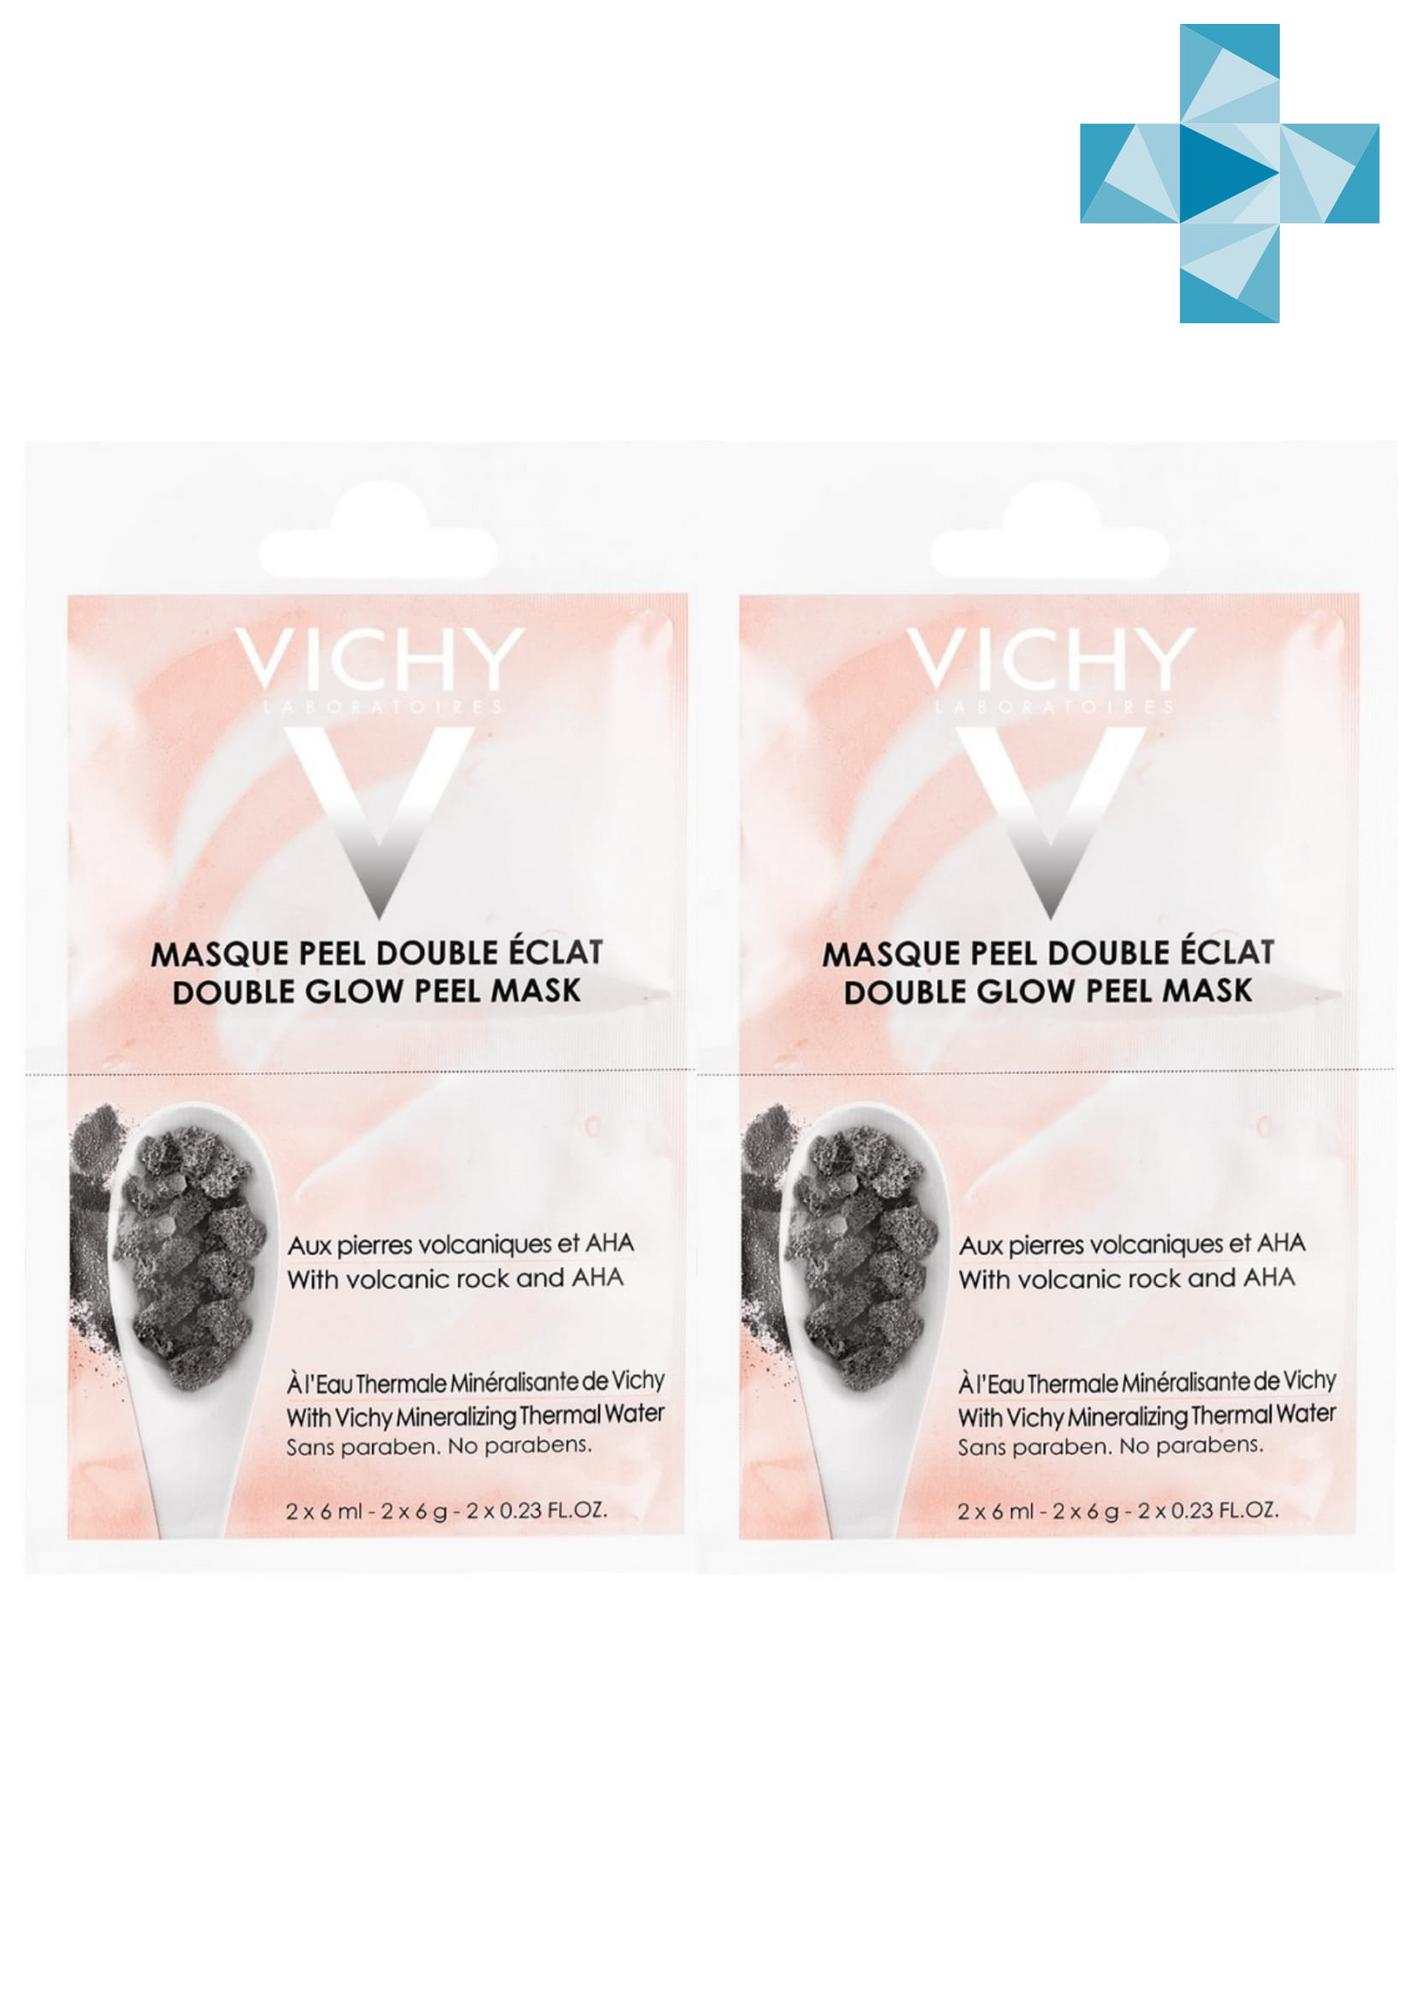 Vichy Комплект Минеральная маска-пилинг Двойное сияние саше 2х6 мл (Комплект из 2 штук) (Vichy, Masque) цена и фото